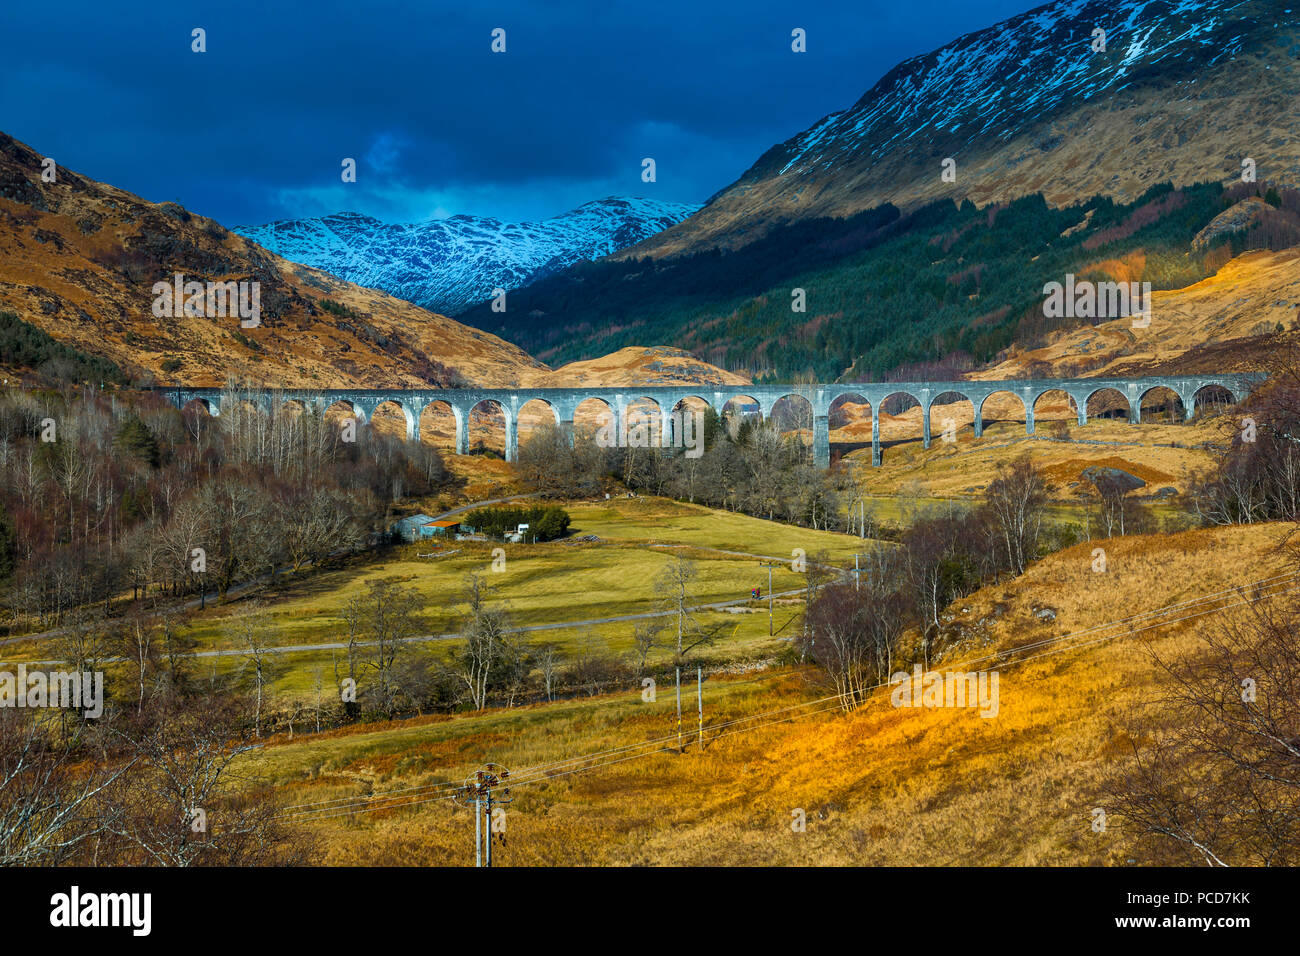 Blick auf das glenfinnan Viadukt ein Eisenbahnviadukt auf der West Highland Line in Glenfinnan, Inverness-shire, Schottland, Großbritannien, Europa Stockfoto